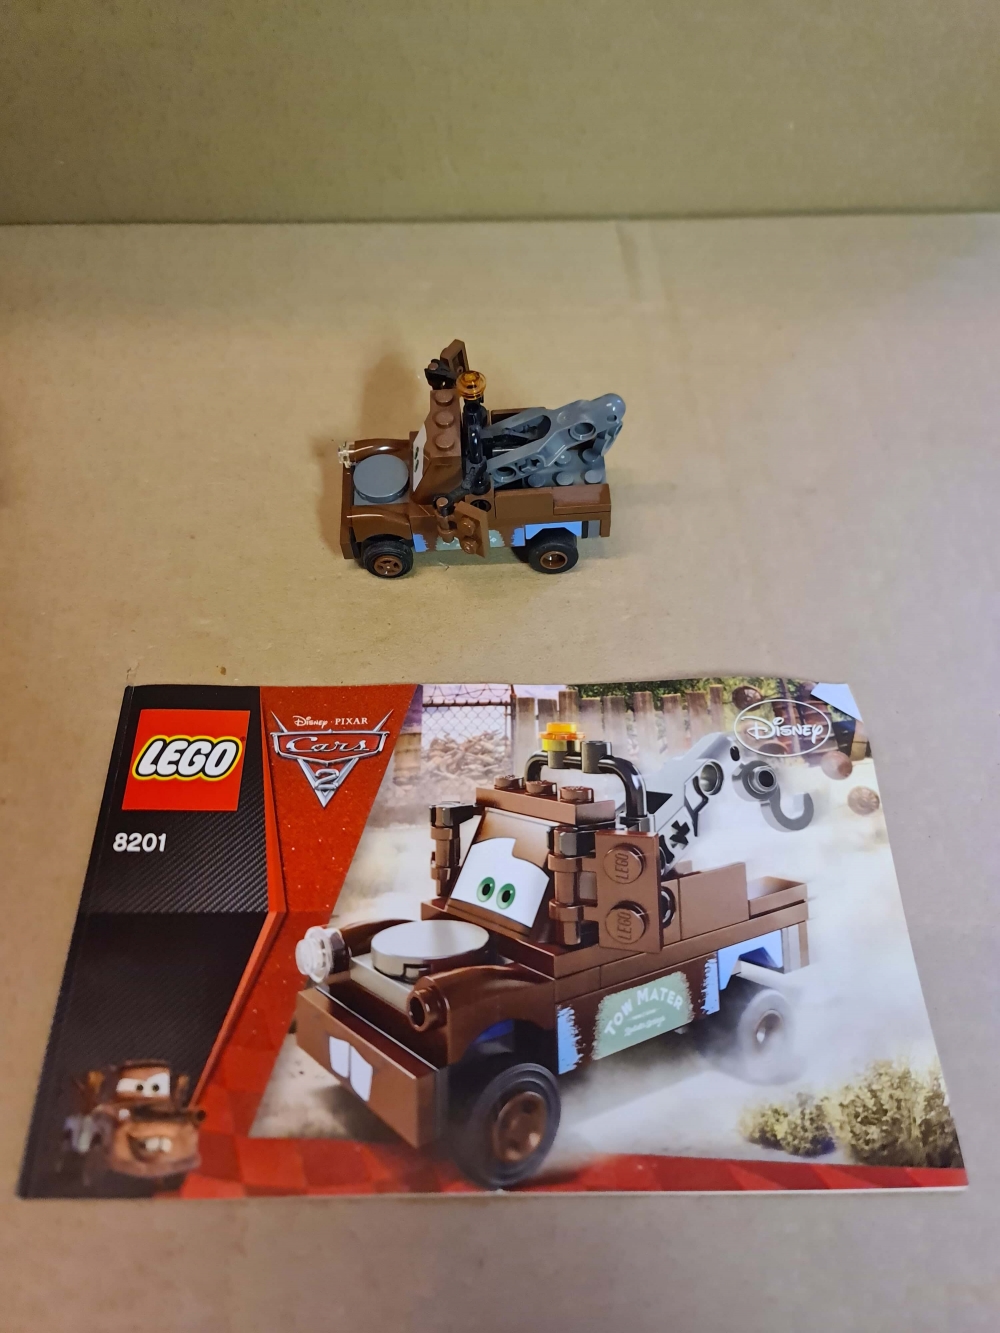 Sett 8201 fra Lego Cars serien.
Meget pent. Komplett med manual.
